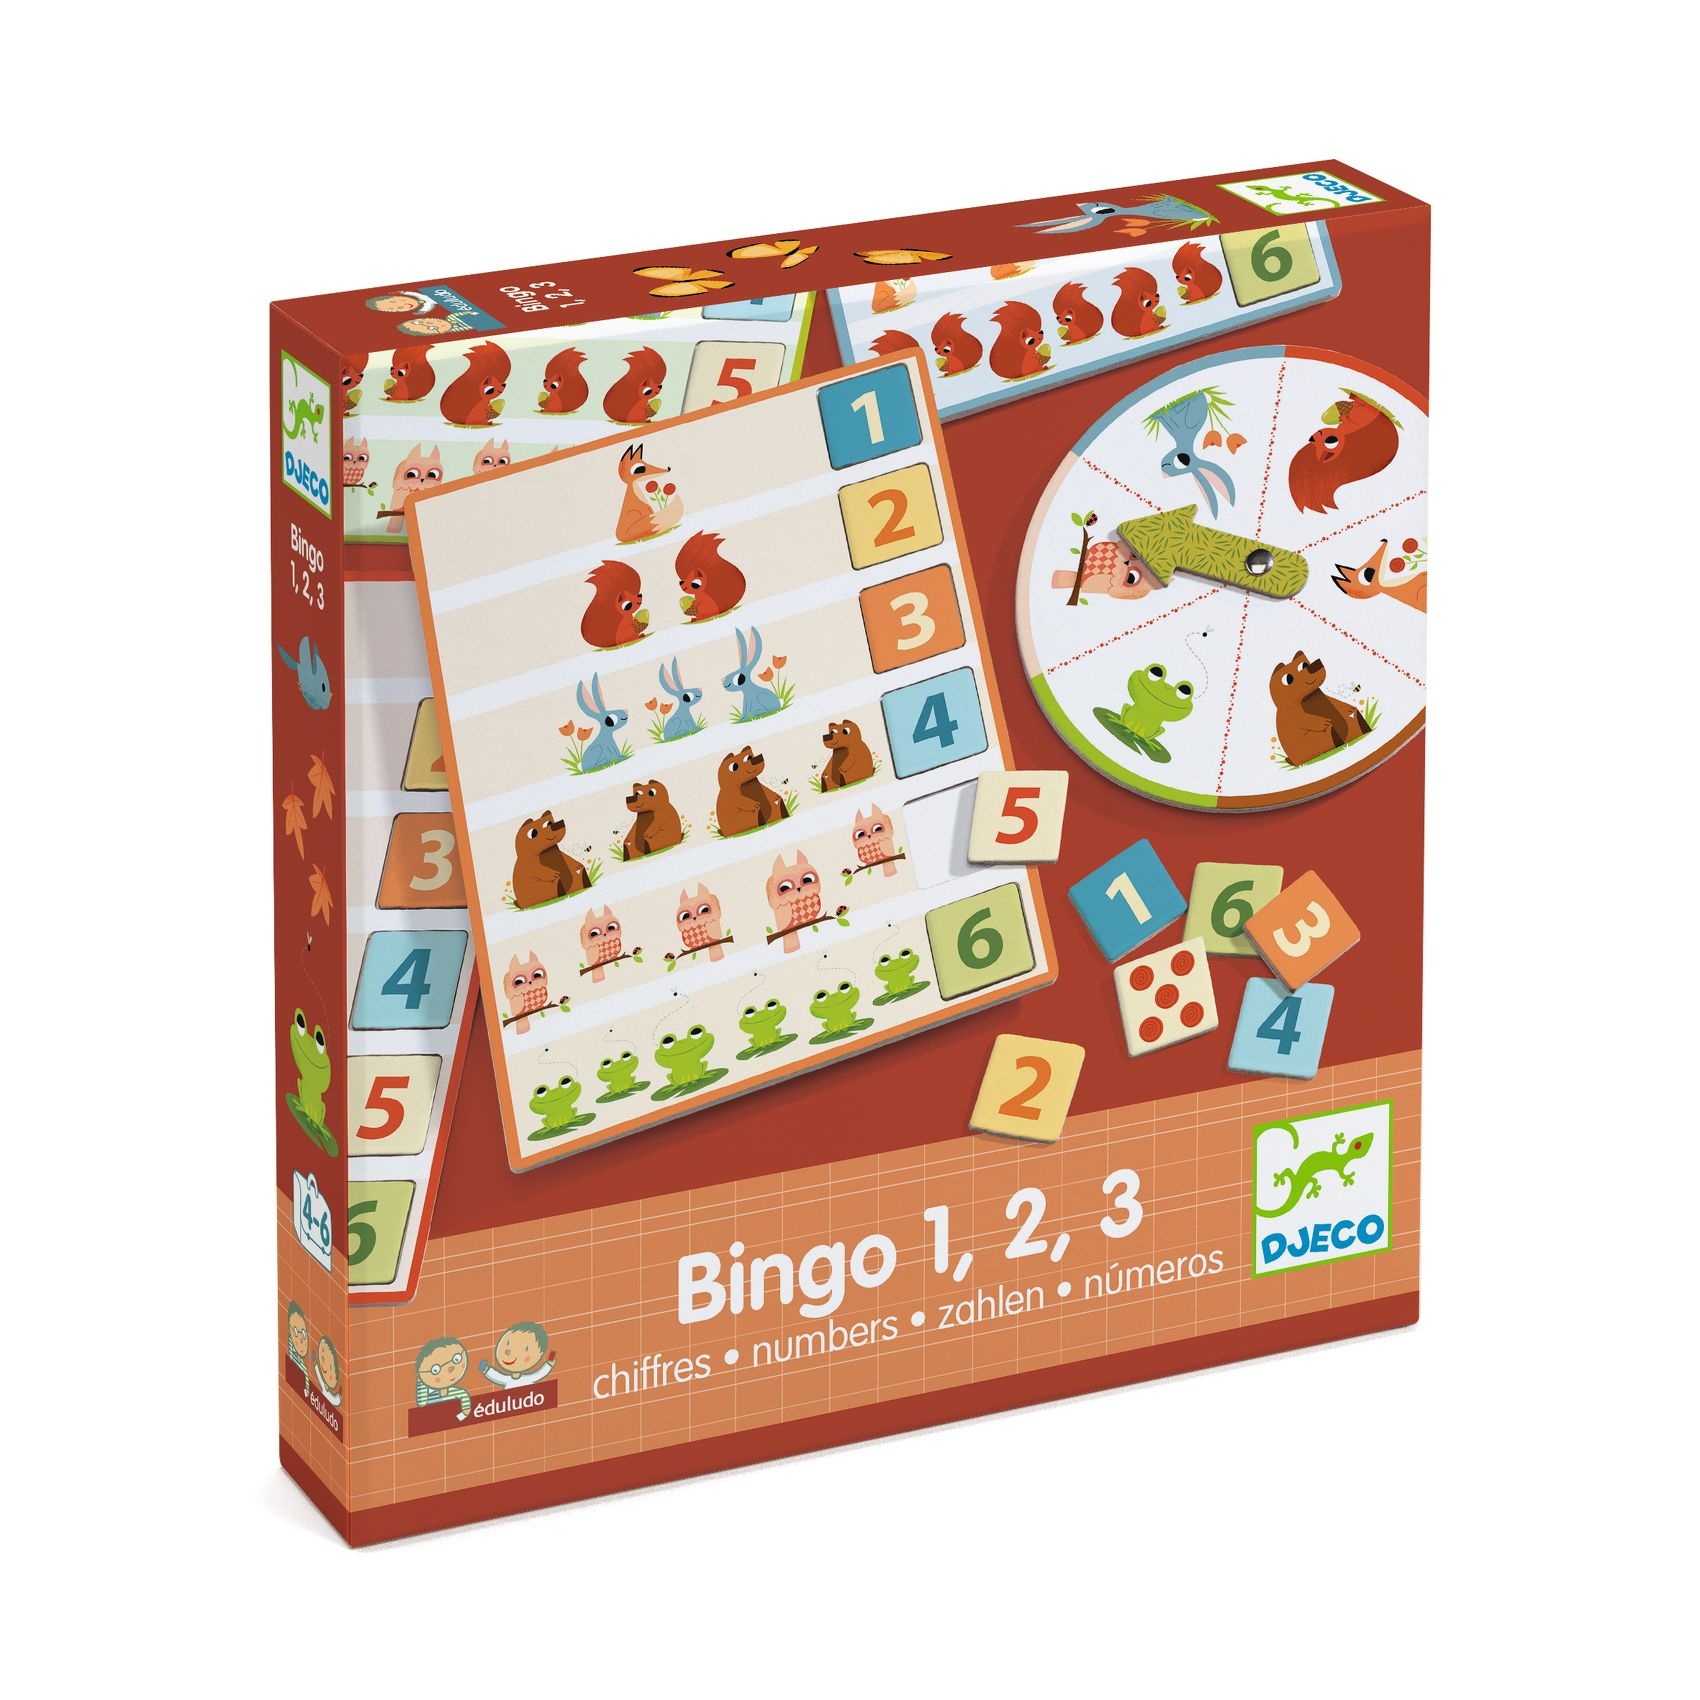 Fejlesztő játék - Bingó a számokkal - Eduludo Bingo 1, 2, 3 numbers - 0